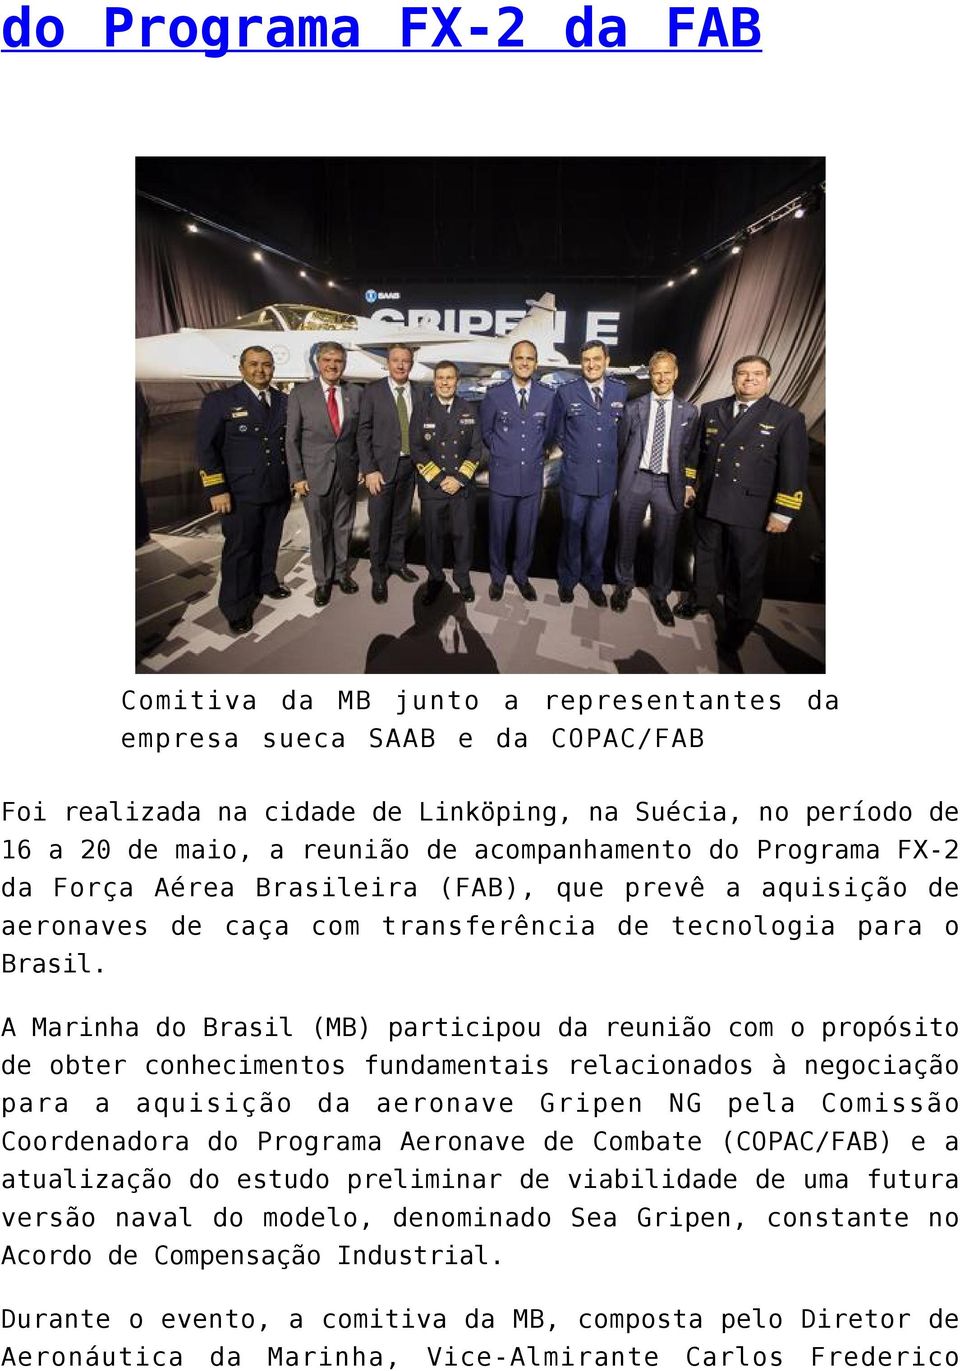 A Marinha do Brasil (MB) participou da reunião com o propósito de obter conhecimentos fundamentais relacionados à negociação para a aquisição da aeronave Gripen NG pela Comissão Coordenadora do